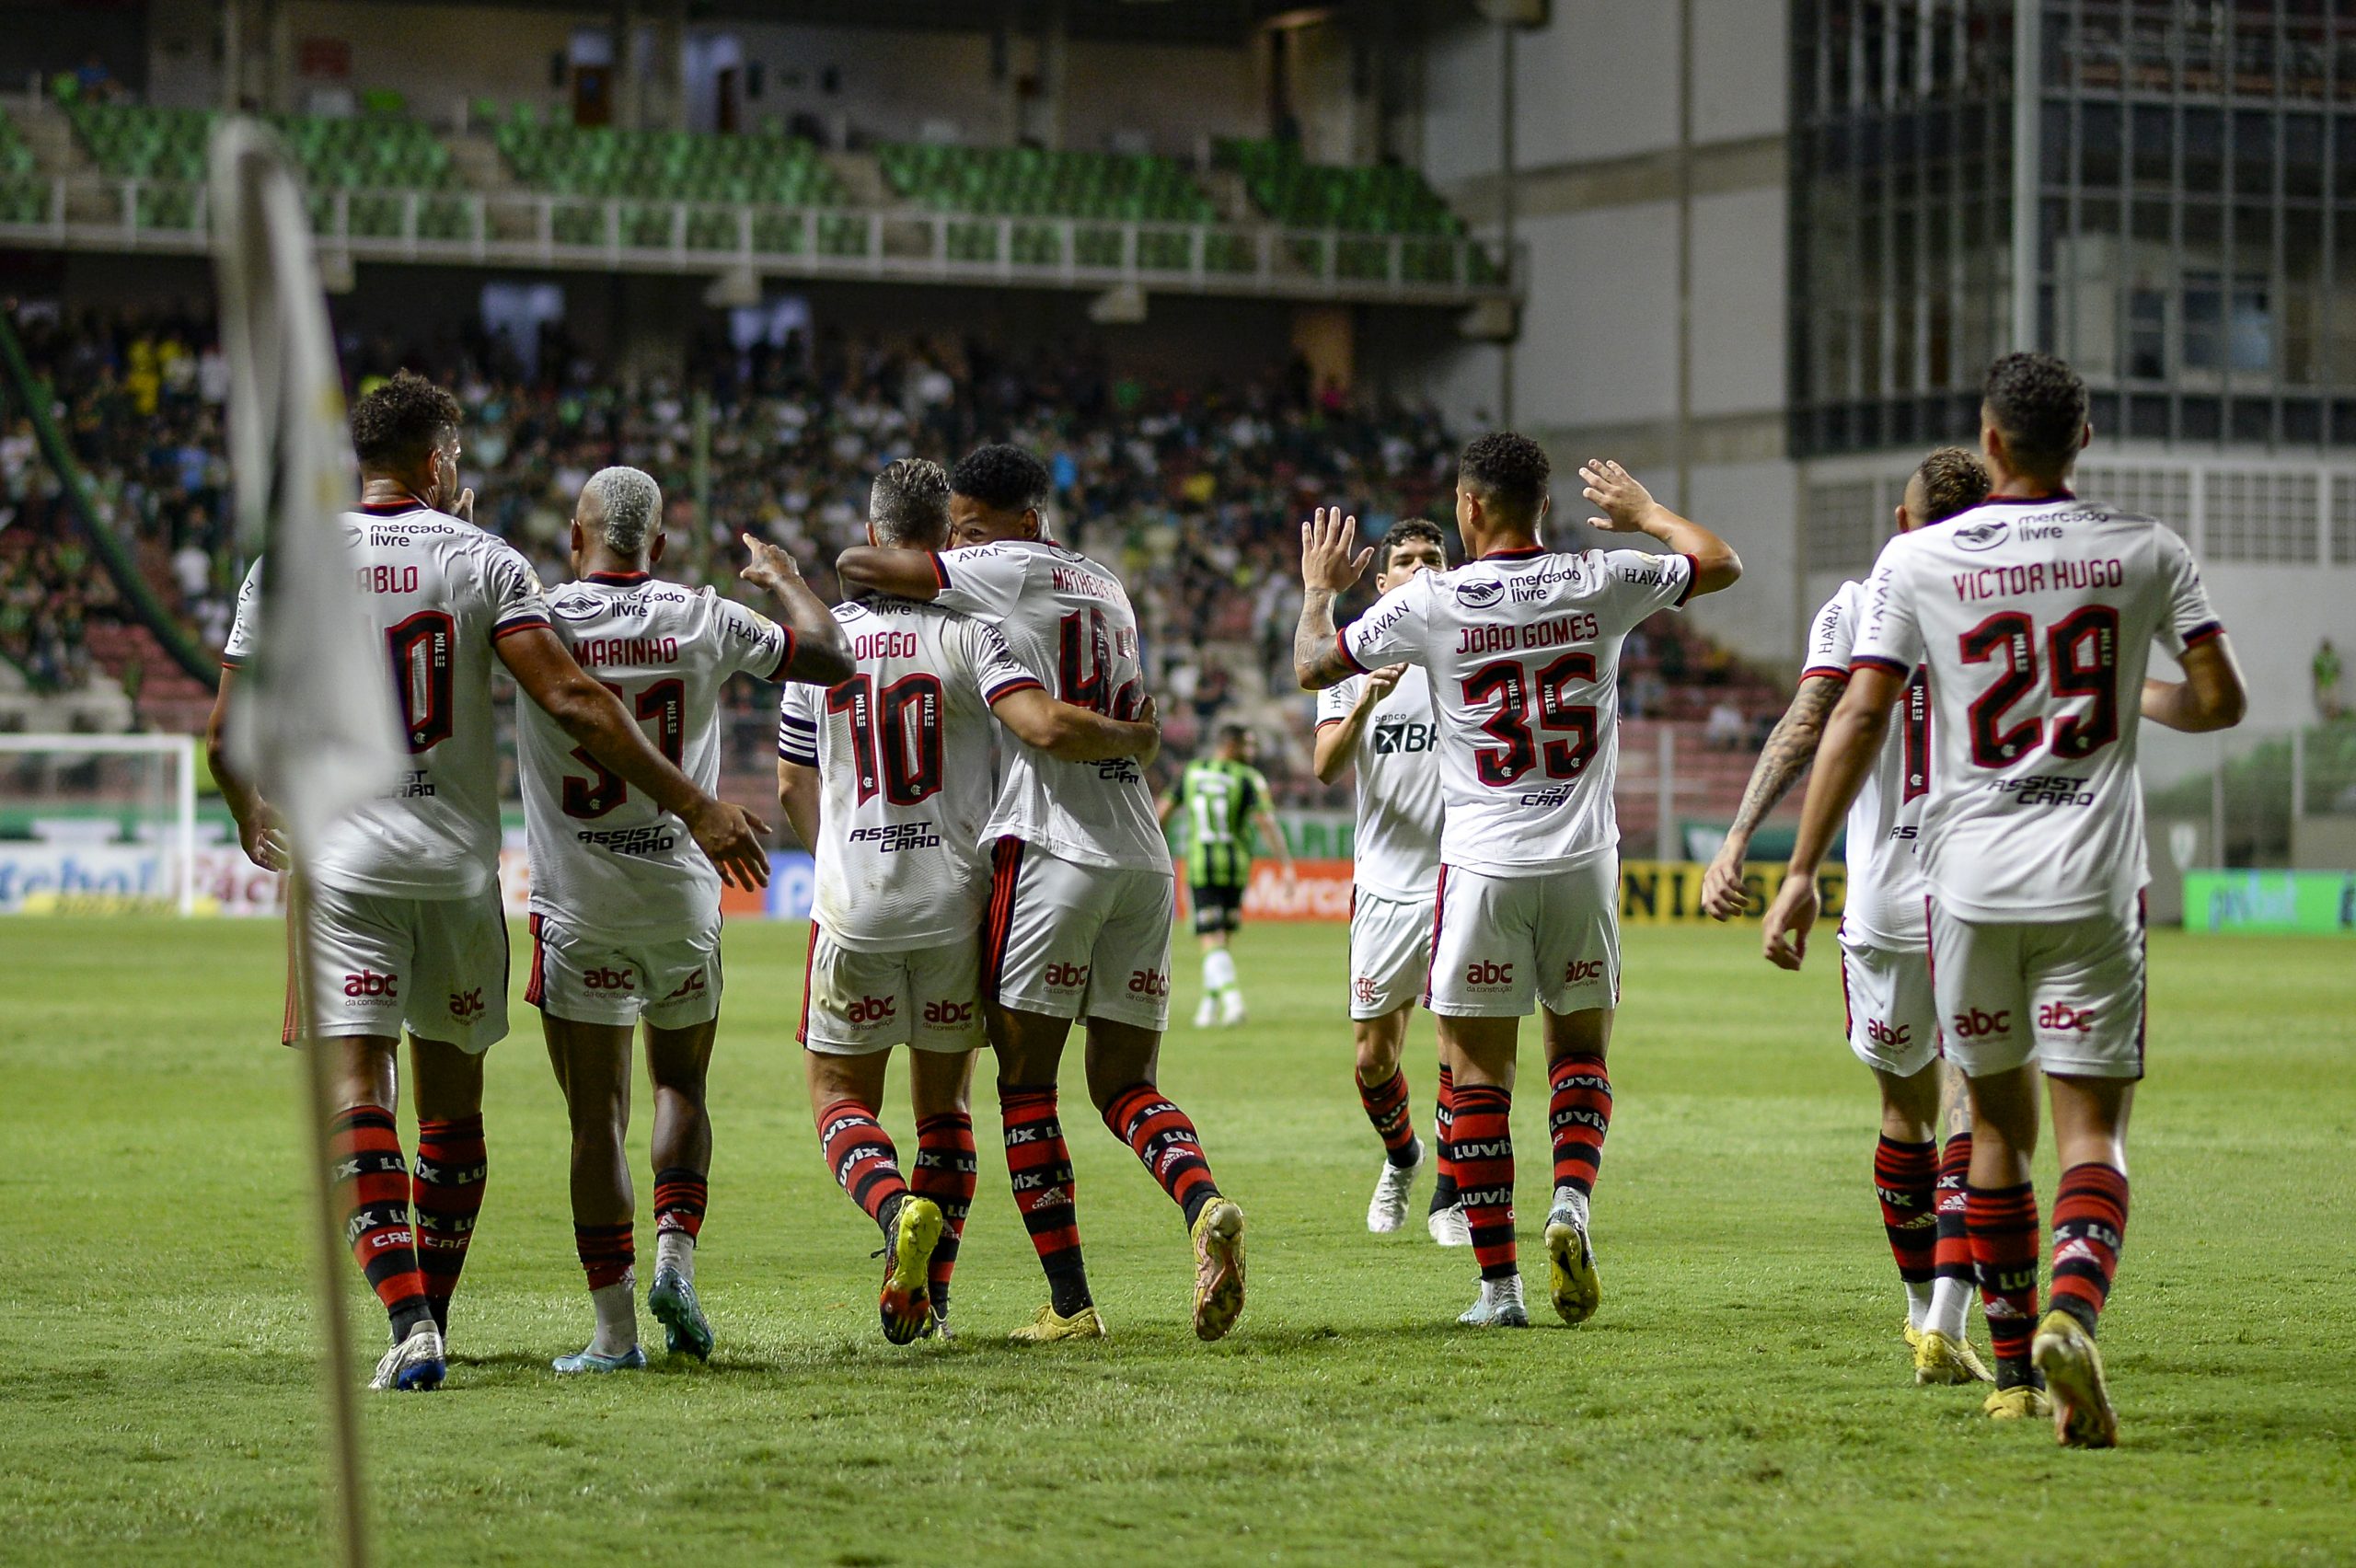 Vitória do Flamengo mantém de pé longo tabu sobre o América-MG